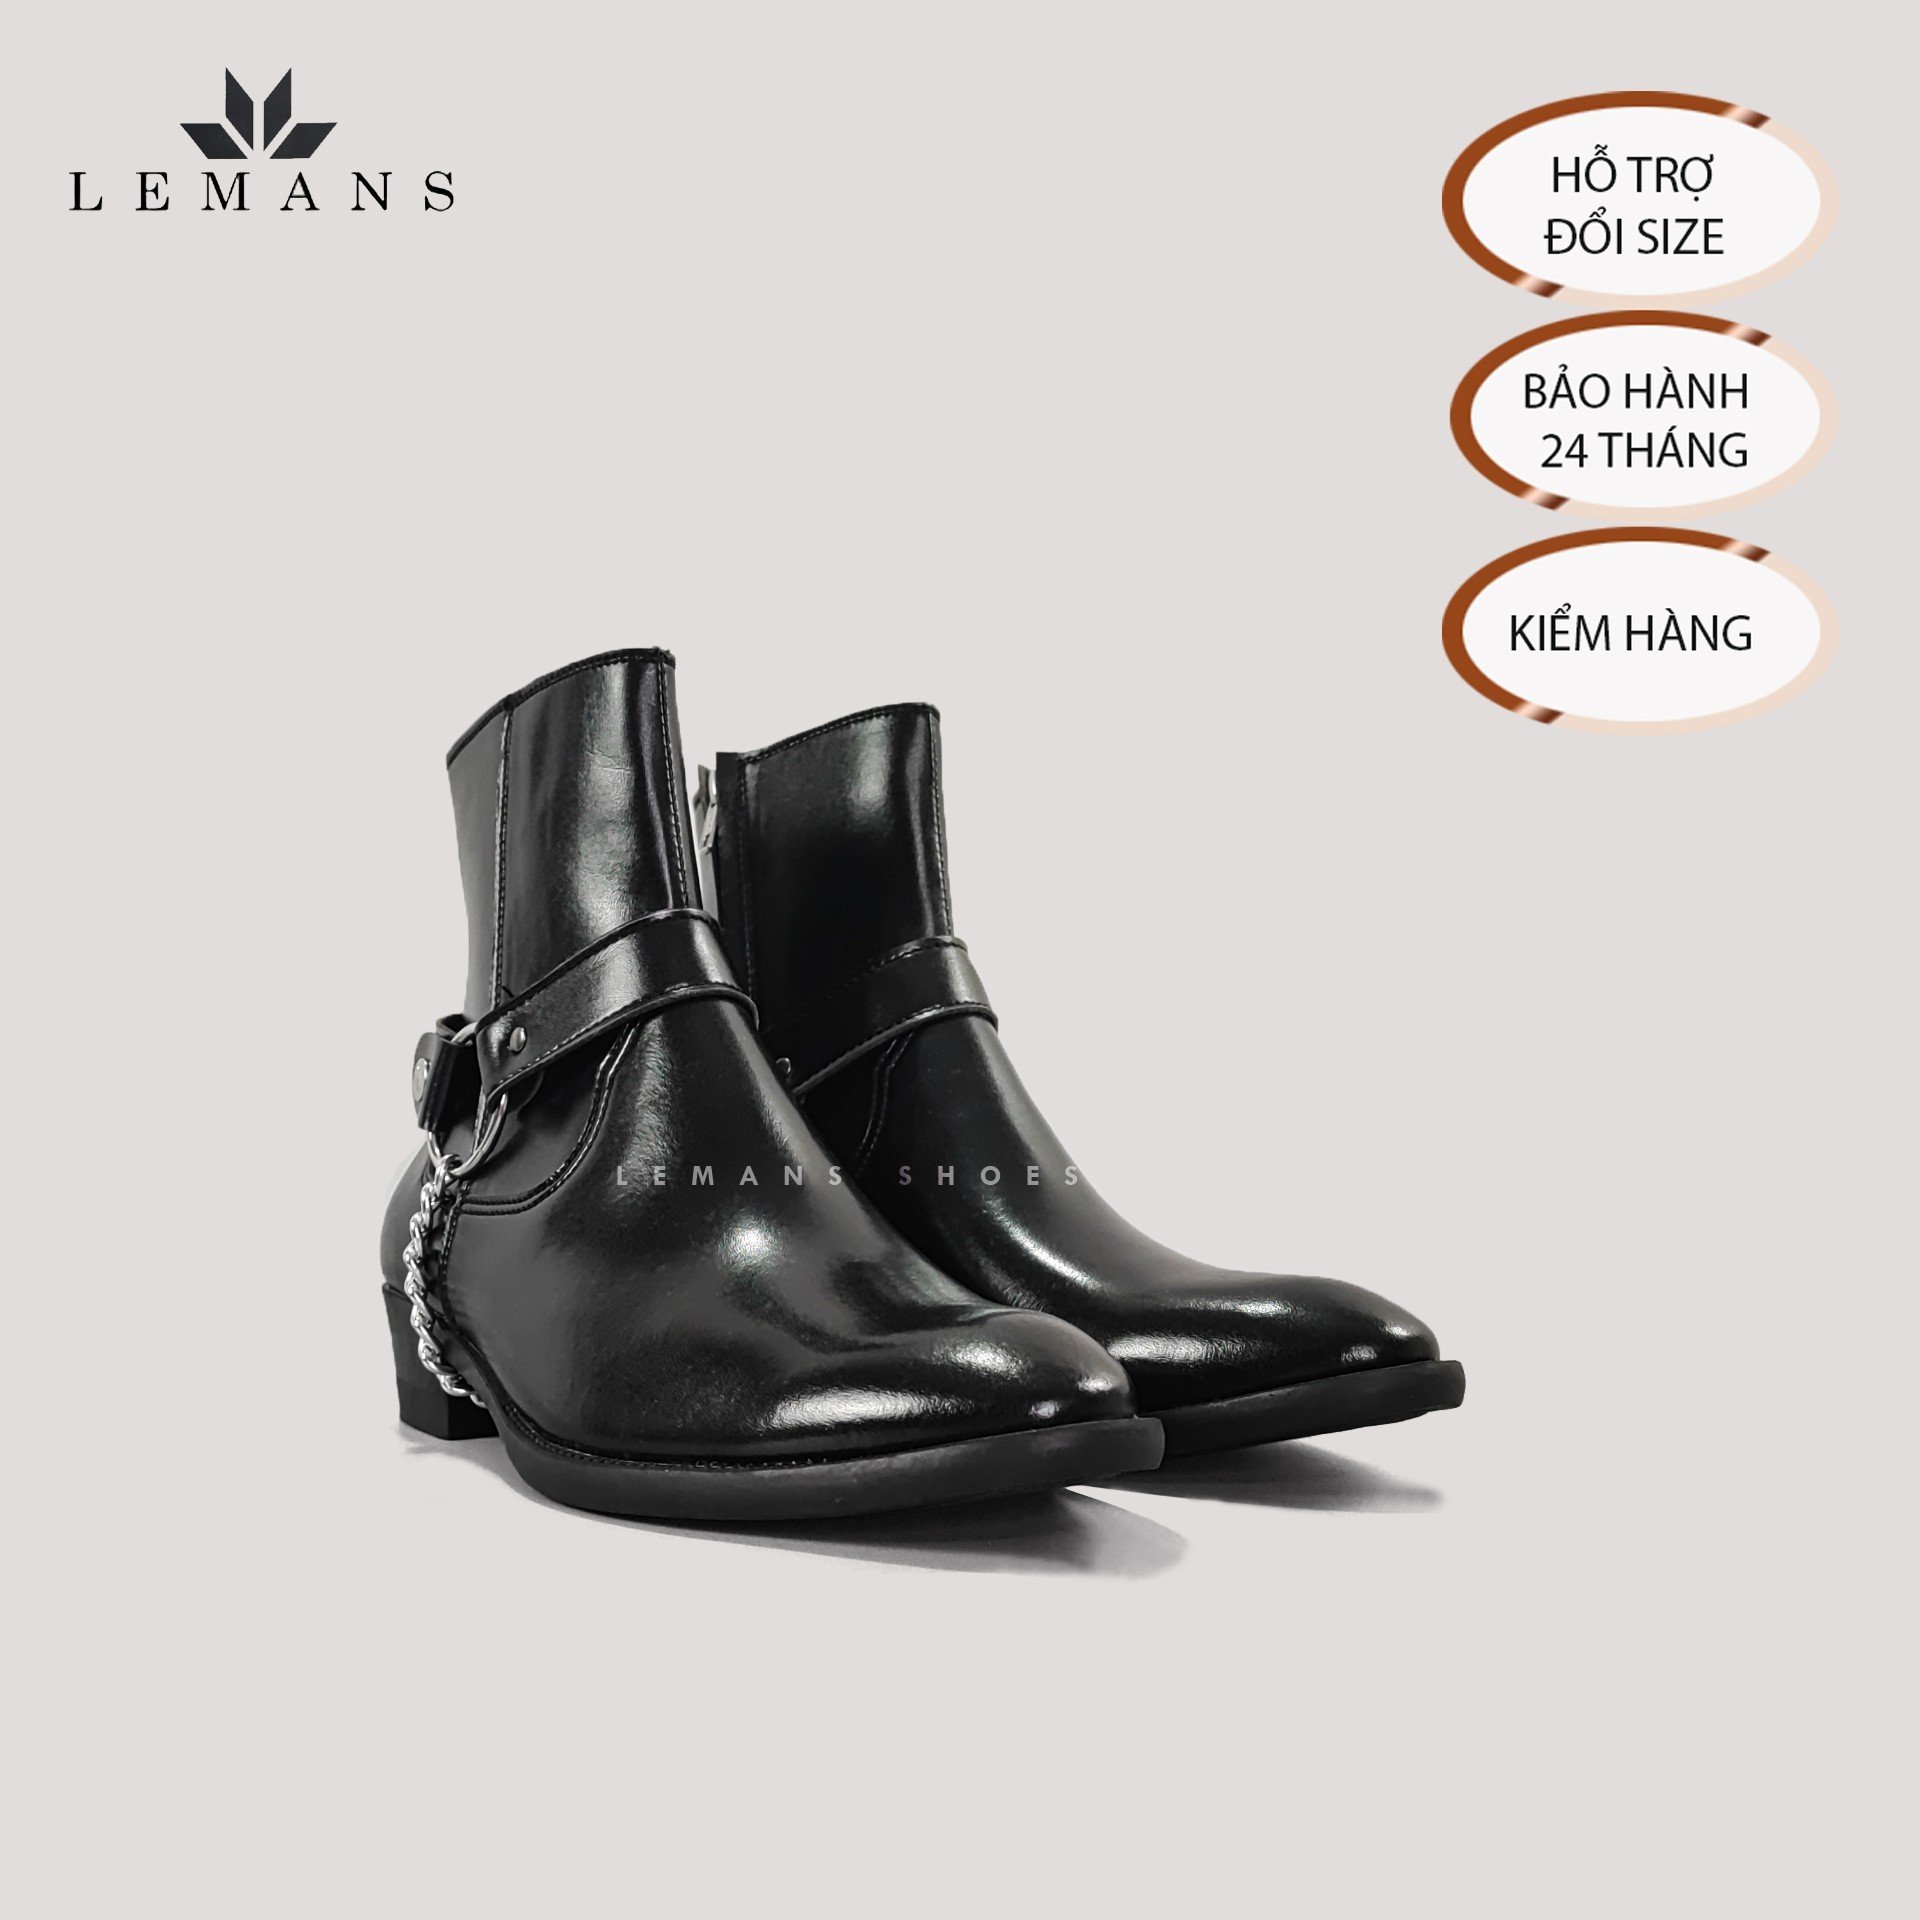 [MUA 1 = 4 BOOTS] Giày da bò Zip (Harness) Boots Black LeMans ZB01B, phối đai xích tạo thành 3 đôi Harness, bảo hành 24 tháng